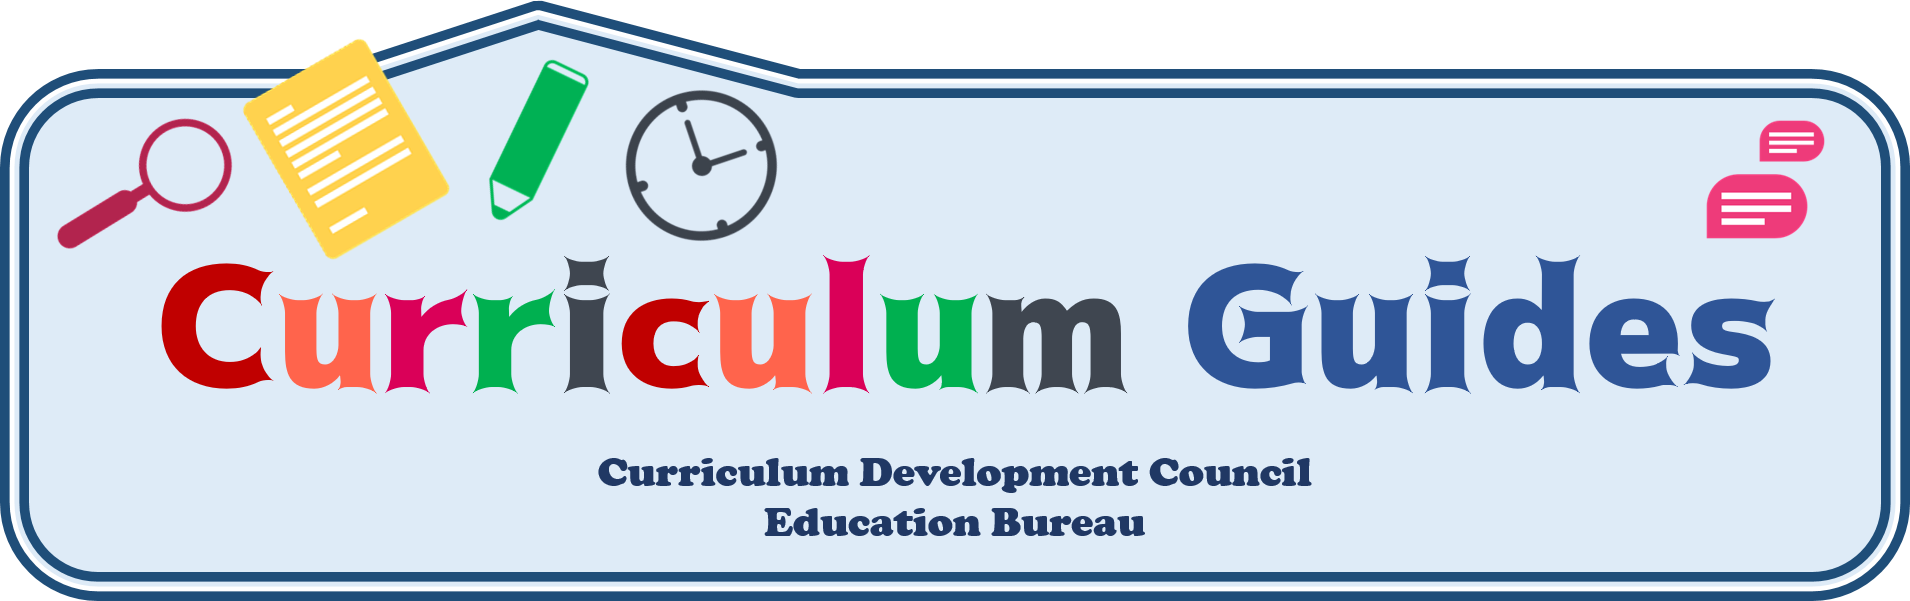 Curriculum Guides Logo